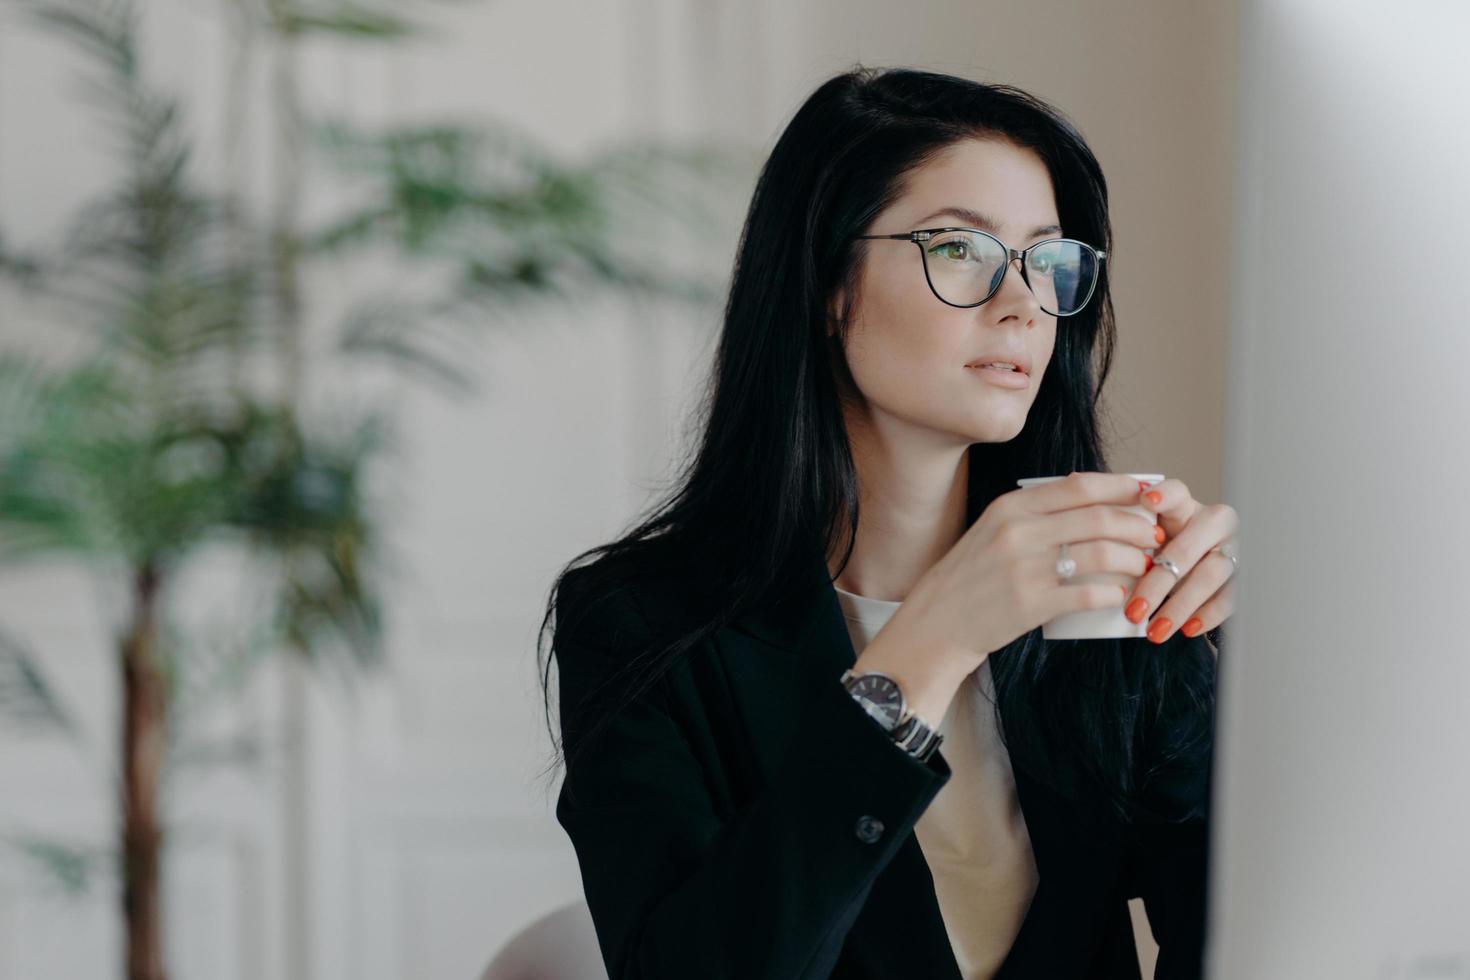 foto di una copywriter bruna concentrata beve caffè, lavora su compiti creativi, indossa occhiali e costume nero formale, guarda webinar per migliorare le abilità, posa nello spazio di coworking